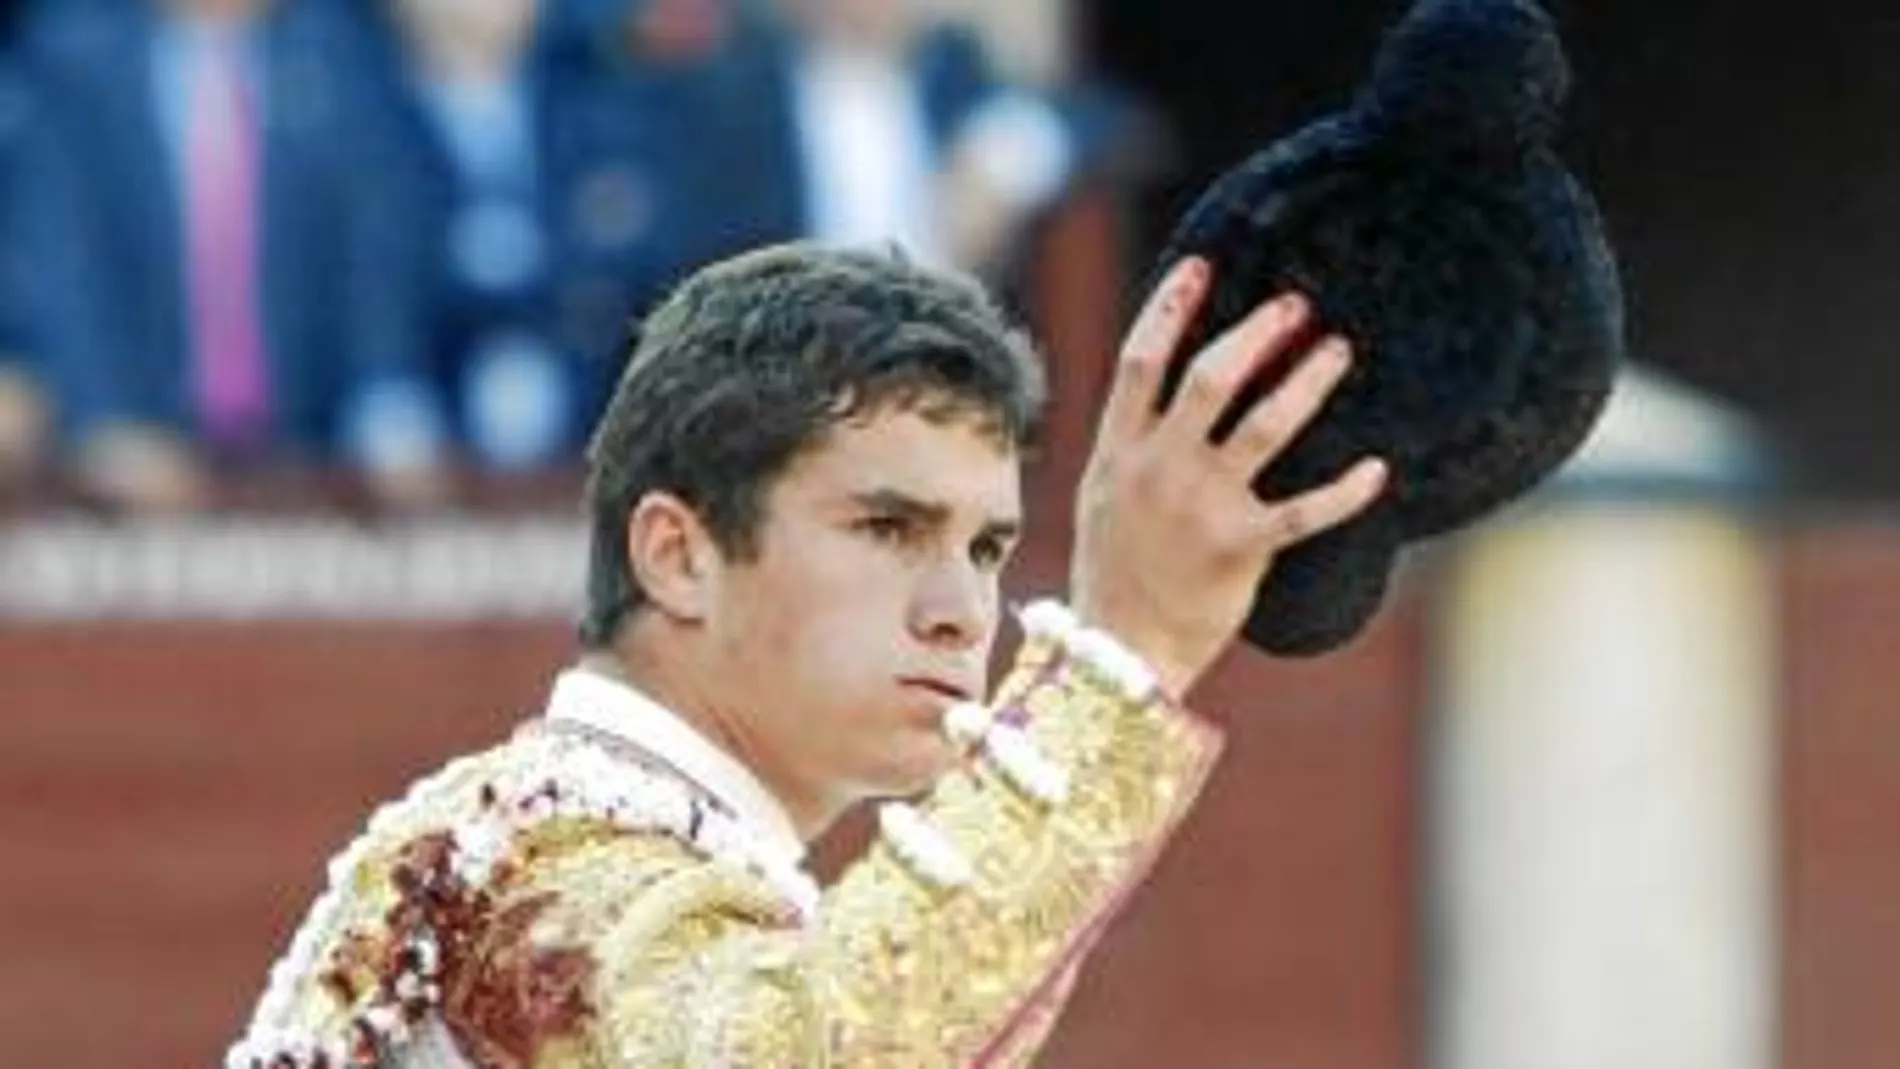 El sevillano Daniel Luque protagonizará la tarde de hoy en Madrid al encerrarse con seis toros de distintas ganaderías